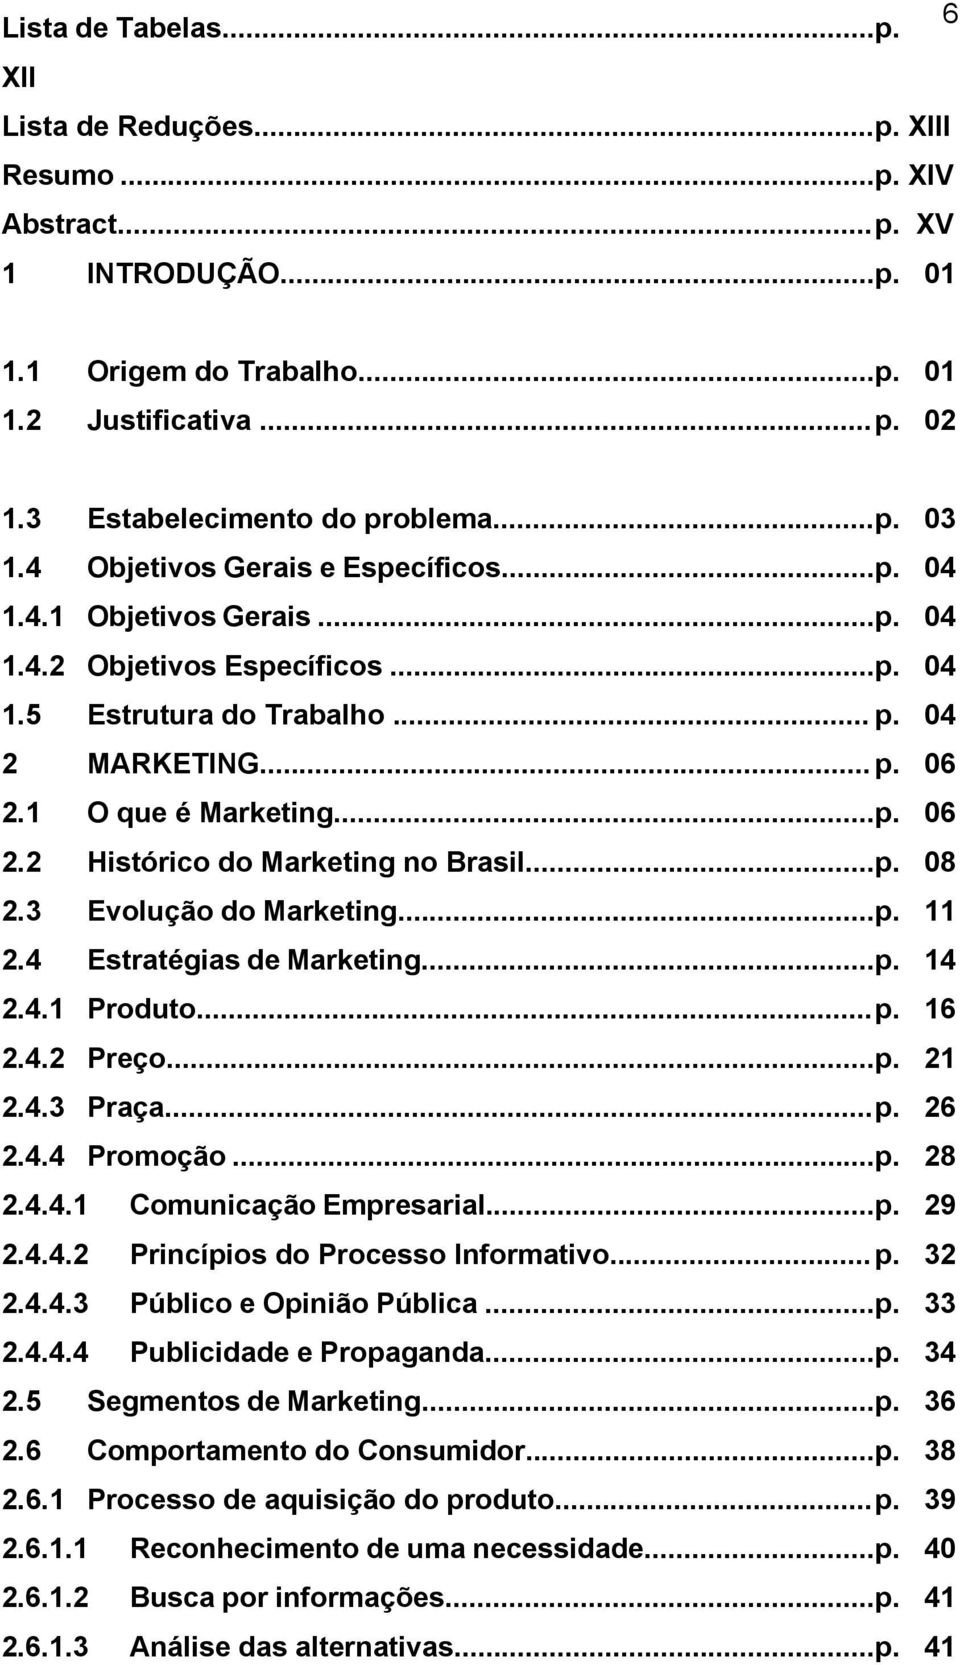 1 O que é Marketing...p. 06 2.2 Histórico do Marketing no Brasil...p. 08 2.3 Evolução do Marketing...p. 11 2.4 Estratégias de Marketing...p. 14 2.4.1 Produto... p. 16 2.4.2 Preço...p. 21 2.4.3 Praça.